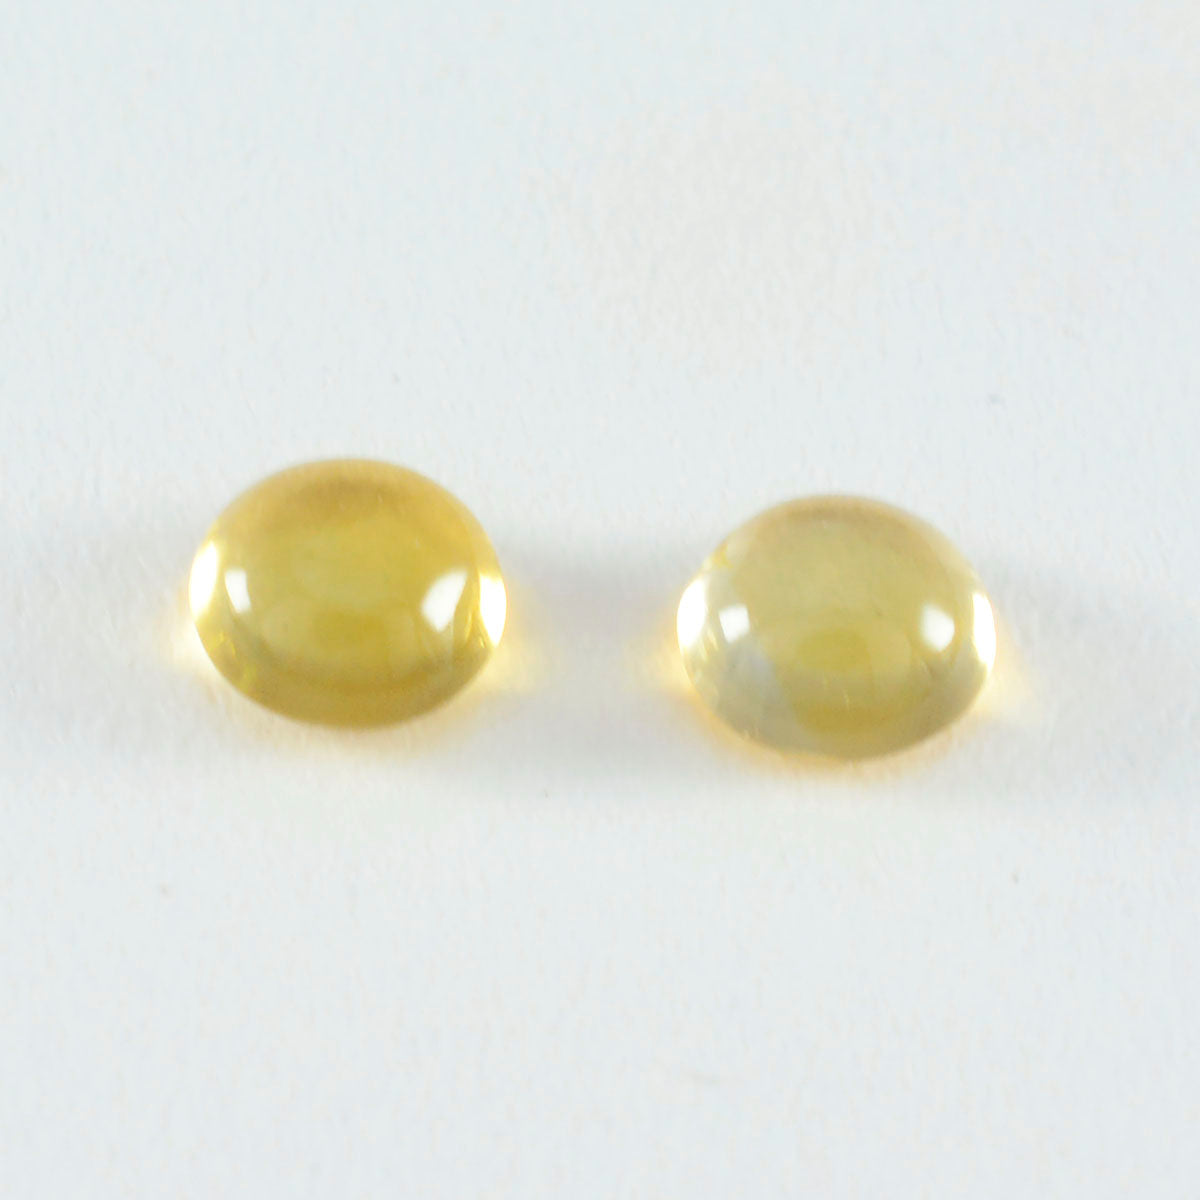 riyogems 1шт желтый цитрин кабошон 13x13 мм круглая форма милые качественные драгоценные камни